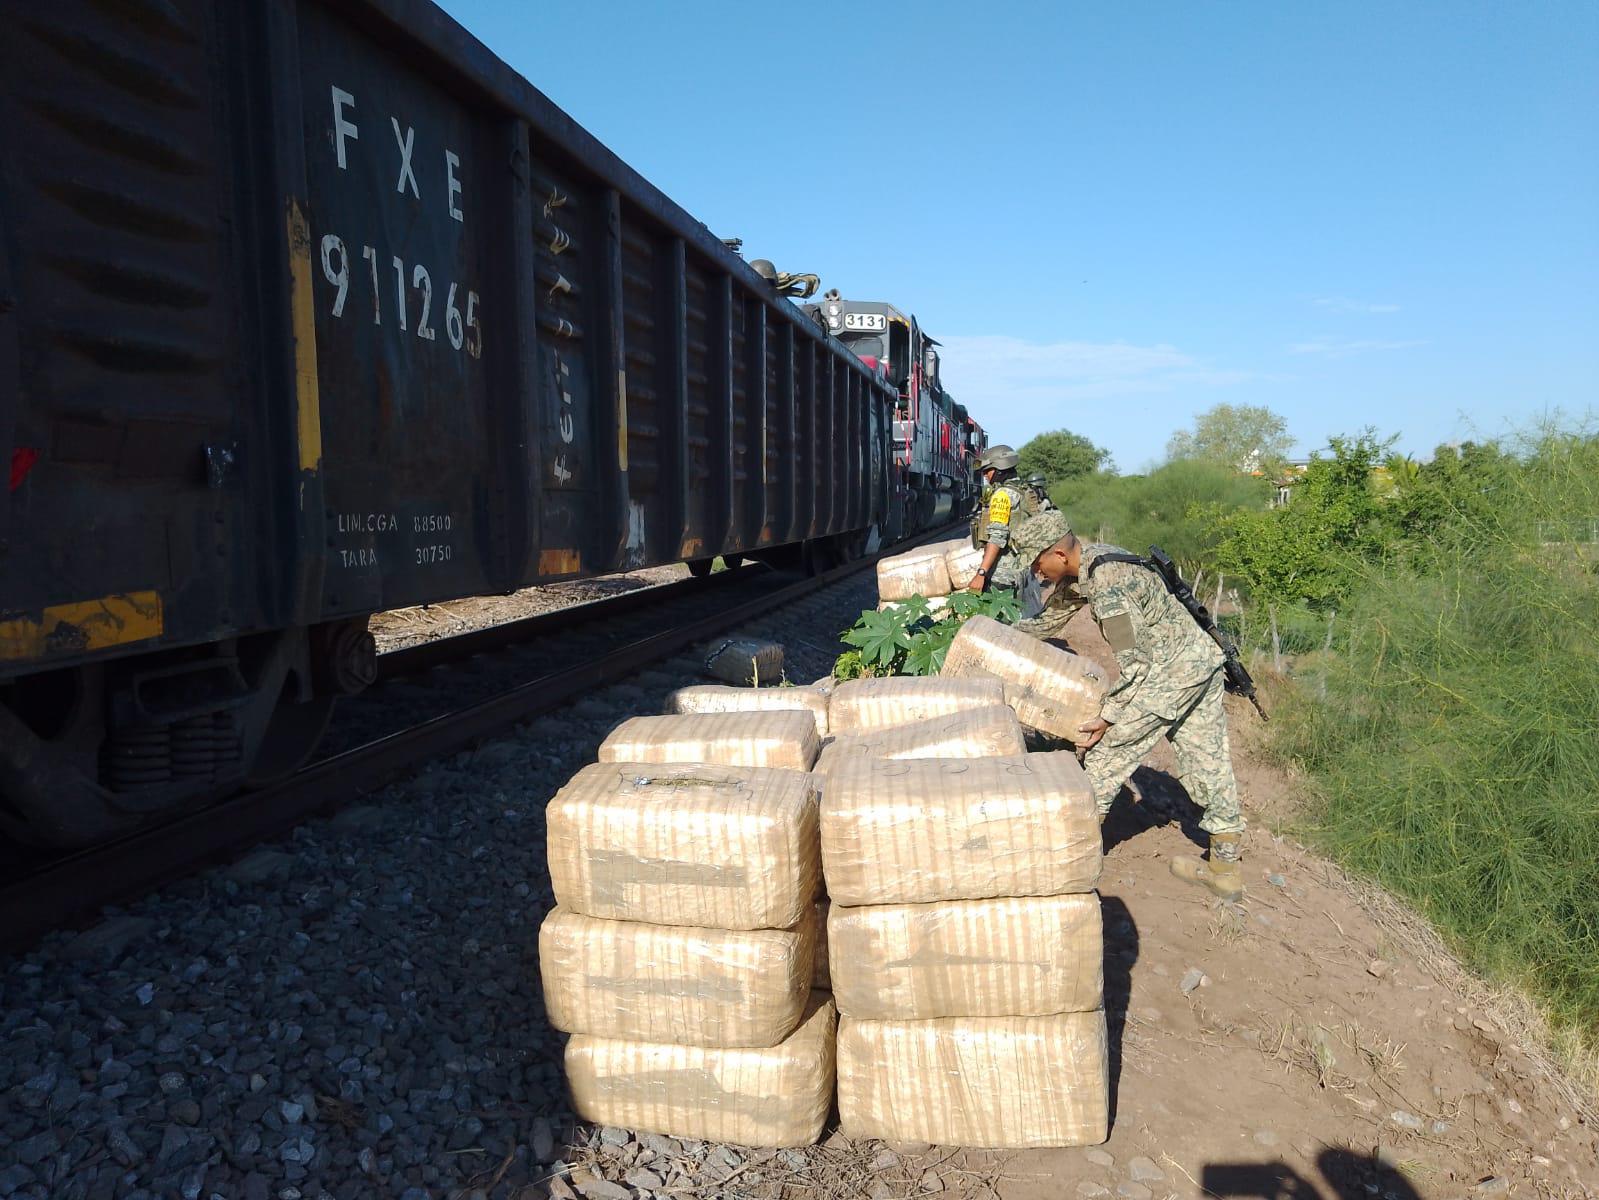 $!Fueron 1.5 toneladas de mariguana las aseguradas en vagón del tren en Culiacán